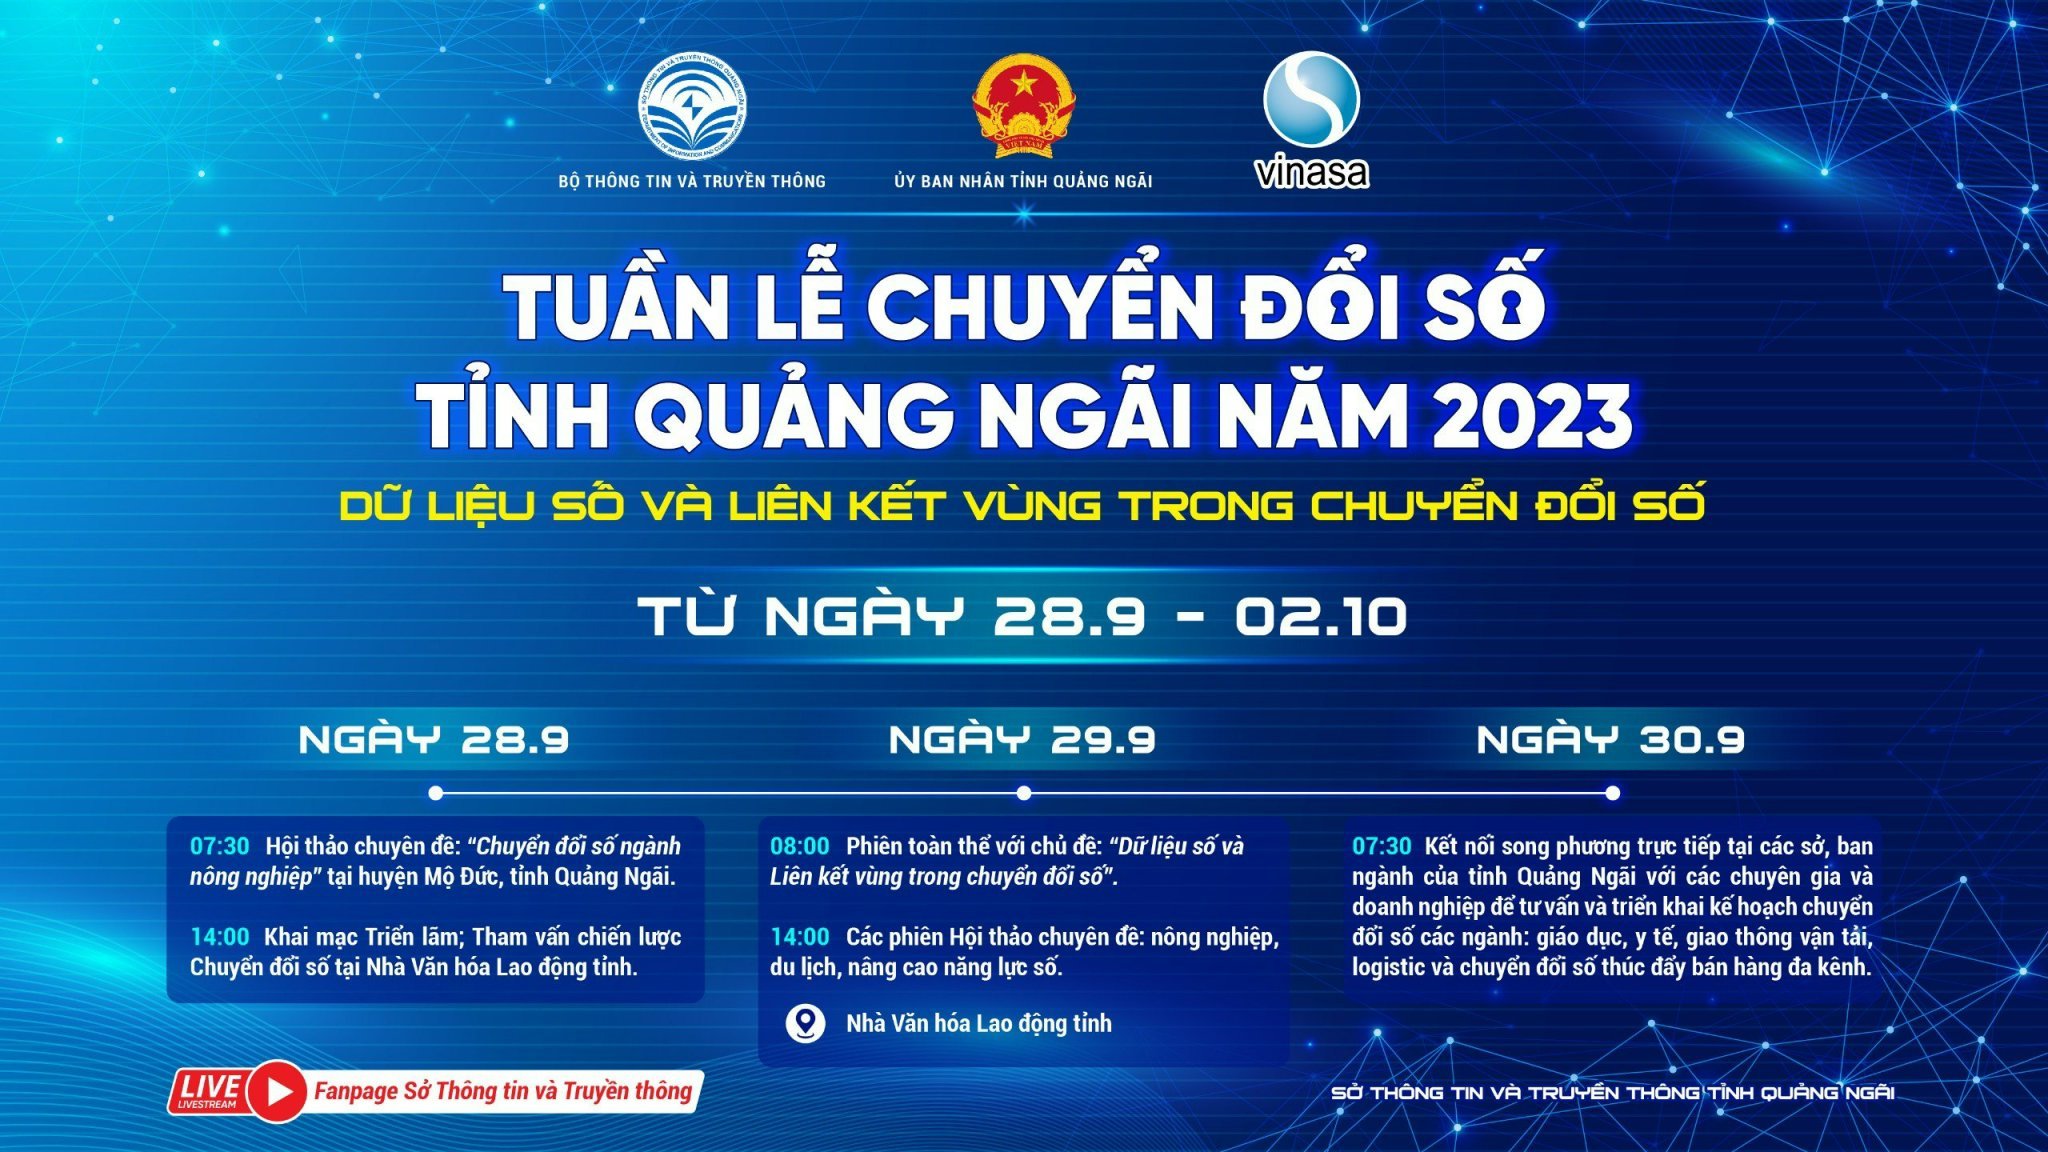 Hướng dẫn tuyên truyền về Tuần lễ Chuyển đổi số tỉnh Quảng Ngãi năm 2023 và Ngày Chuyển đổi số quốc gia (10/10) năm 2023 trên địa bàn huyện